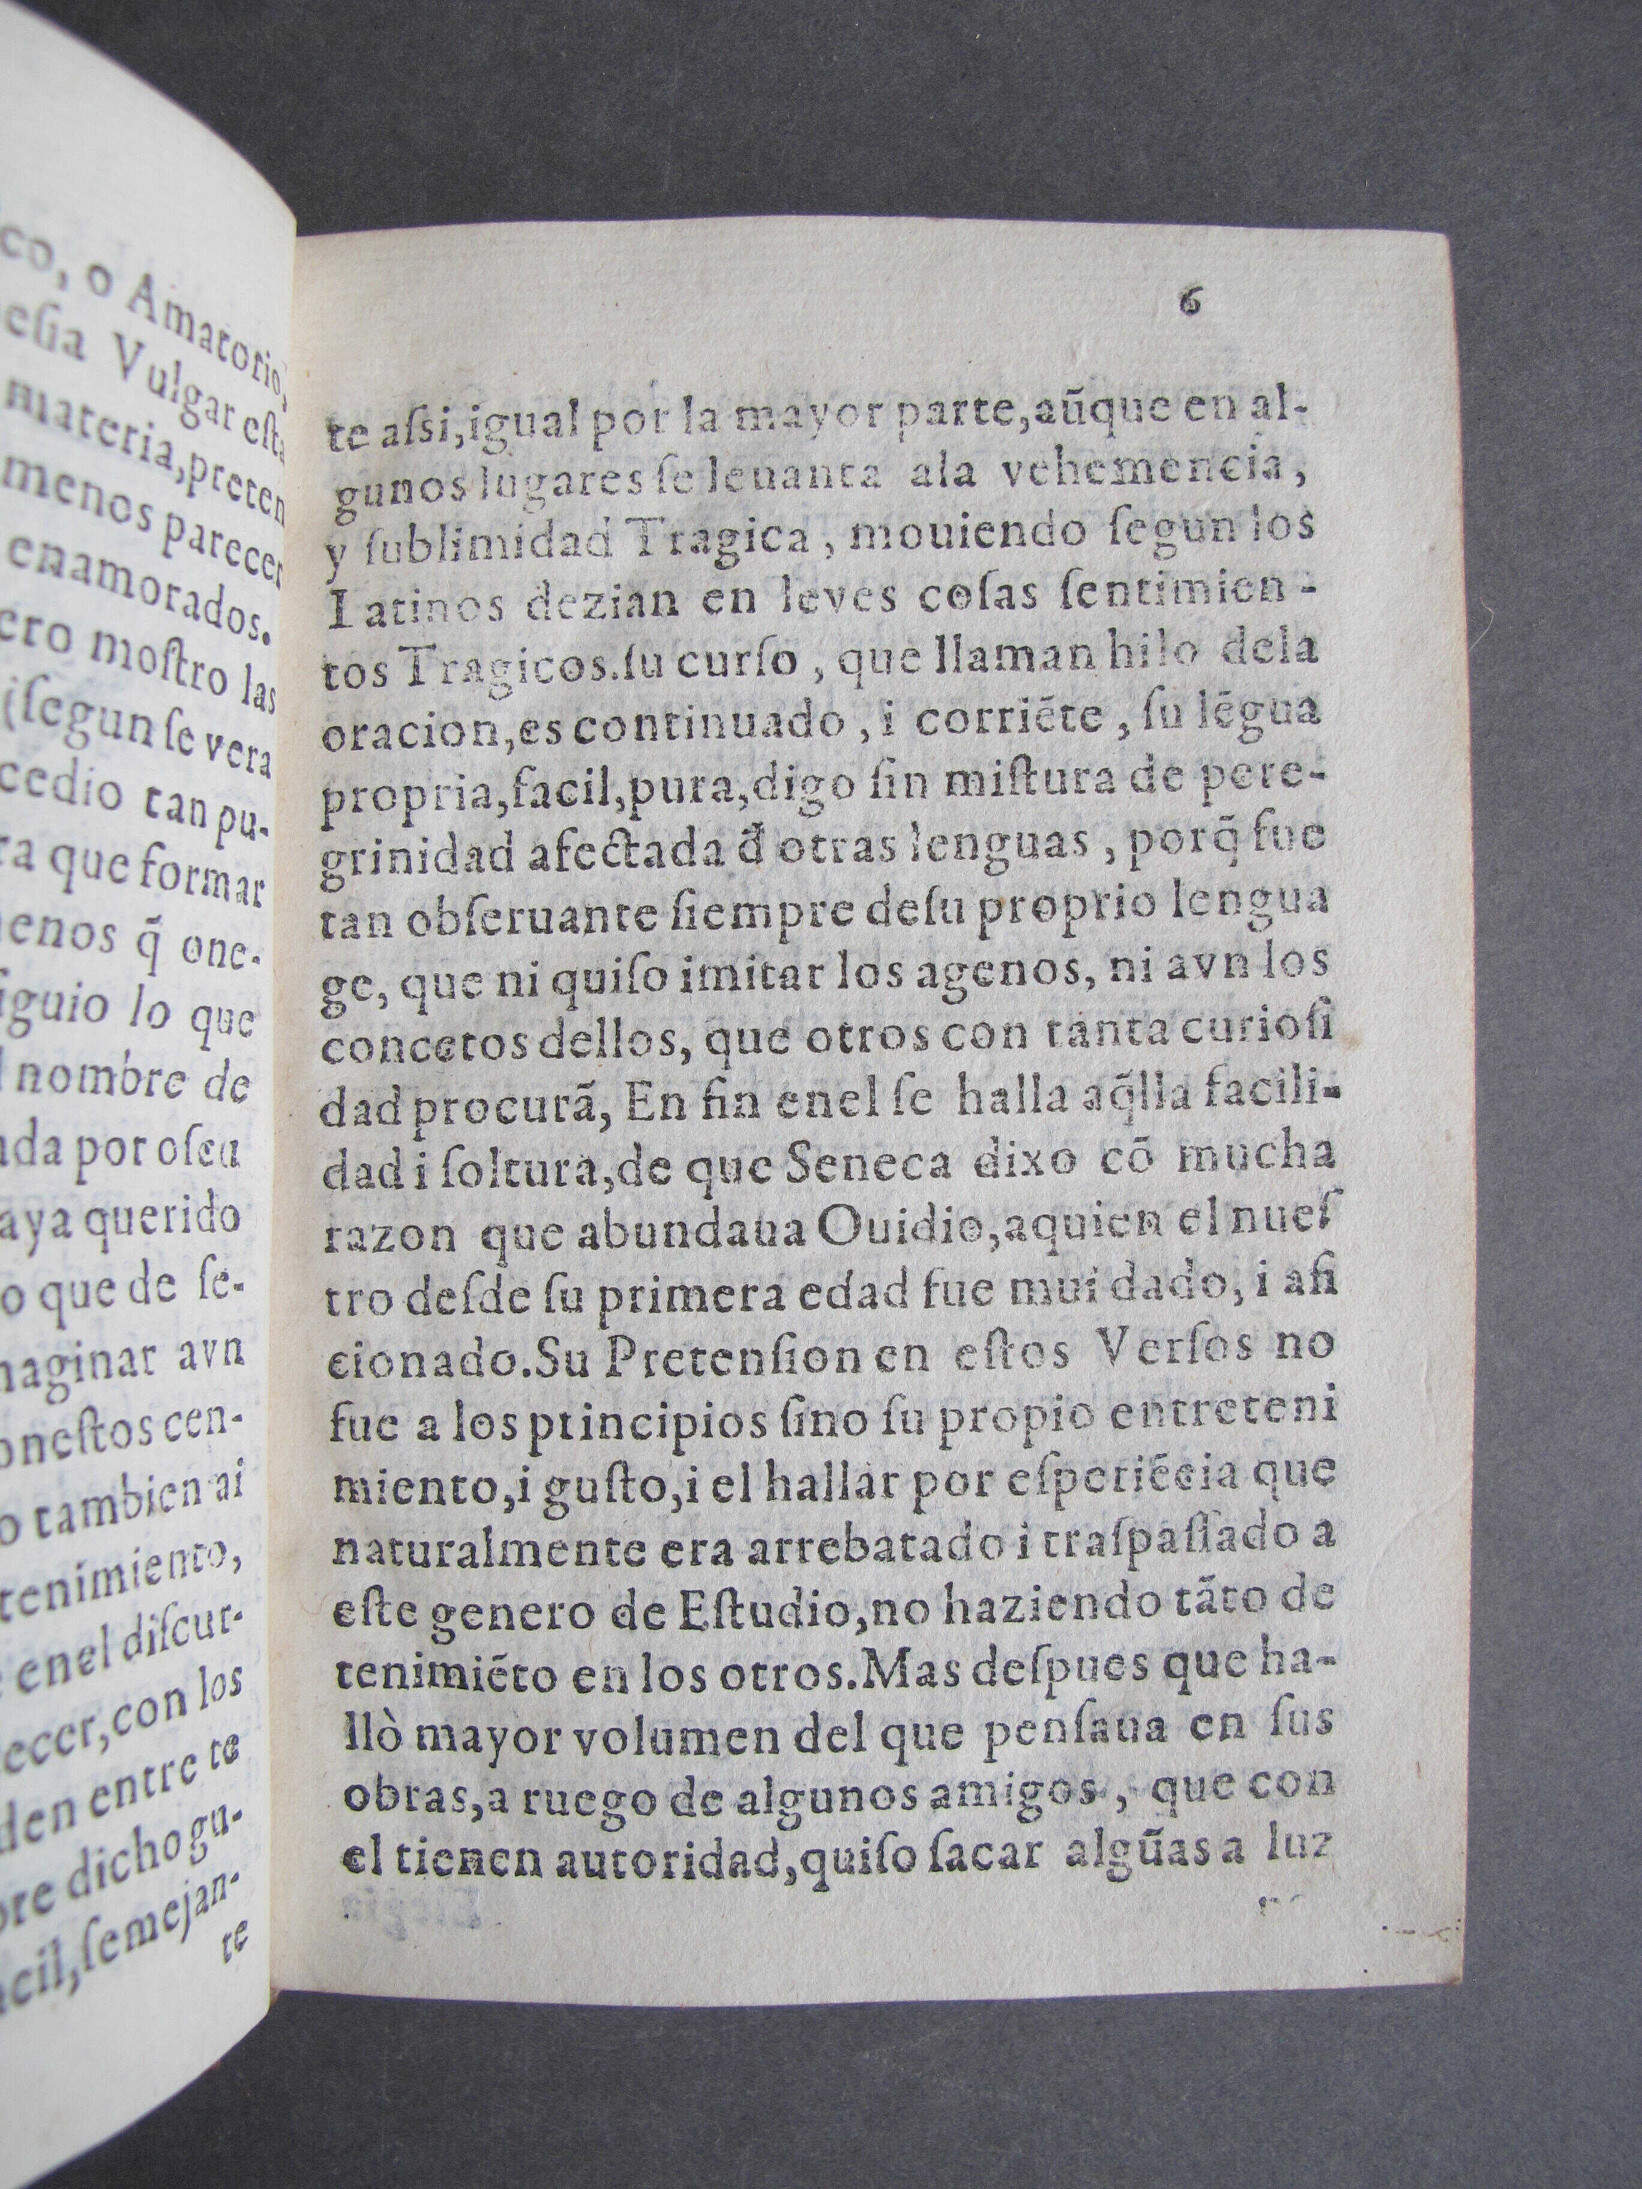 Folio A6